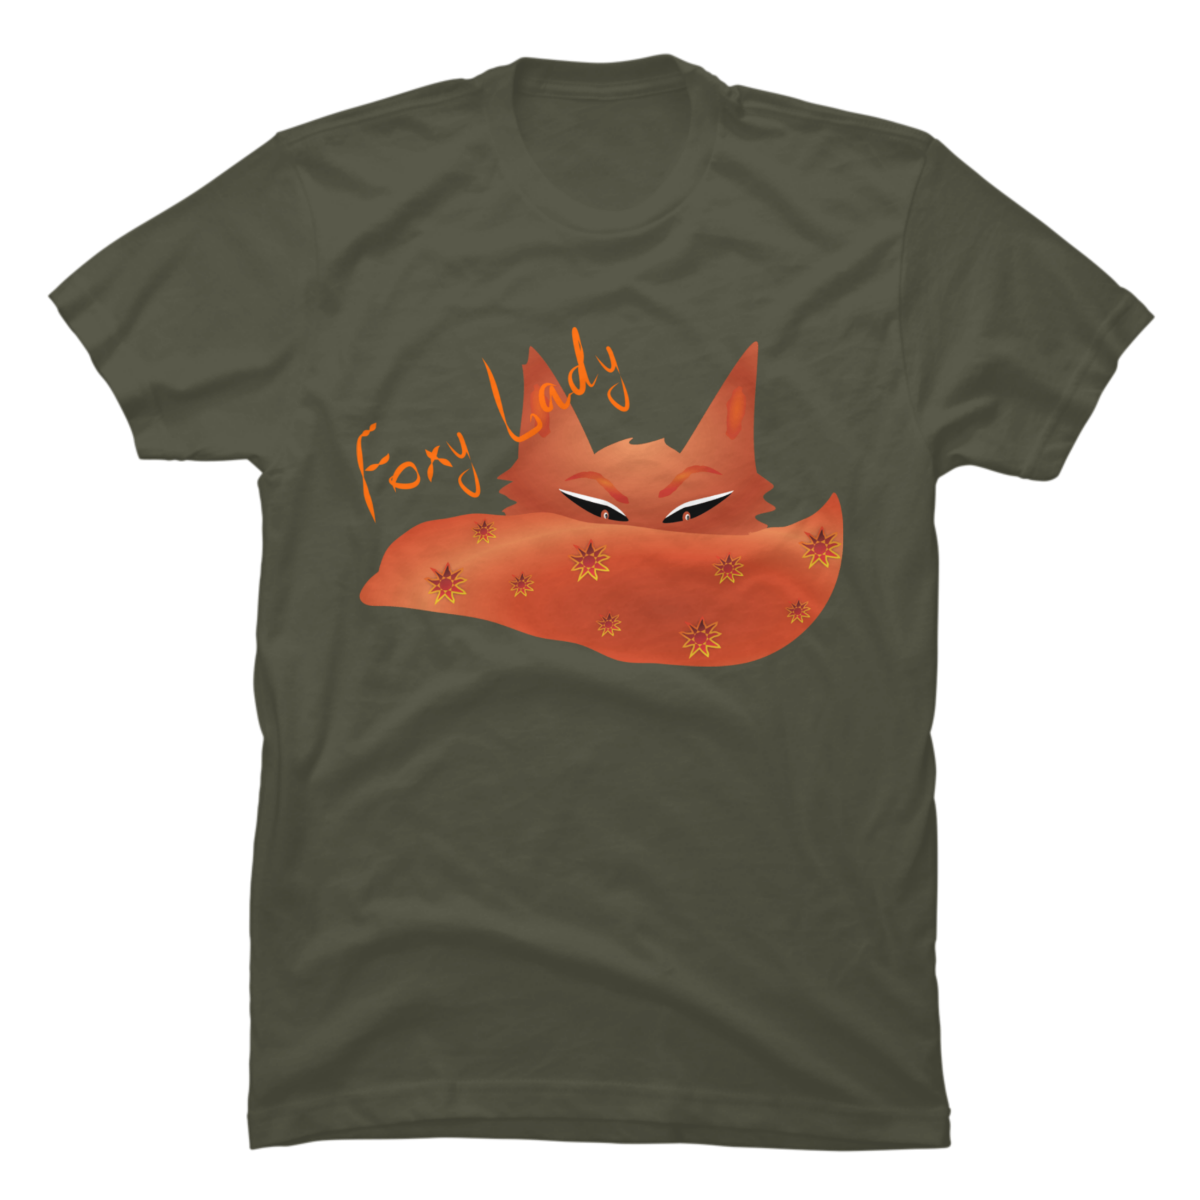 foxy lady t shirt